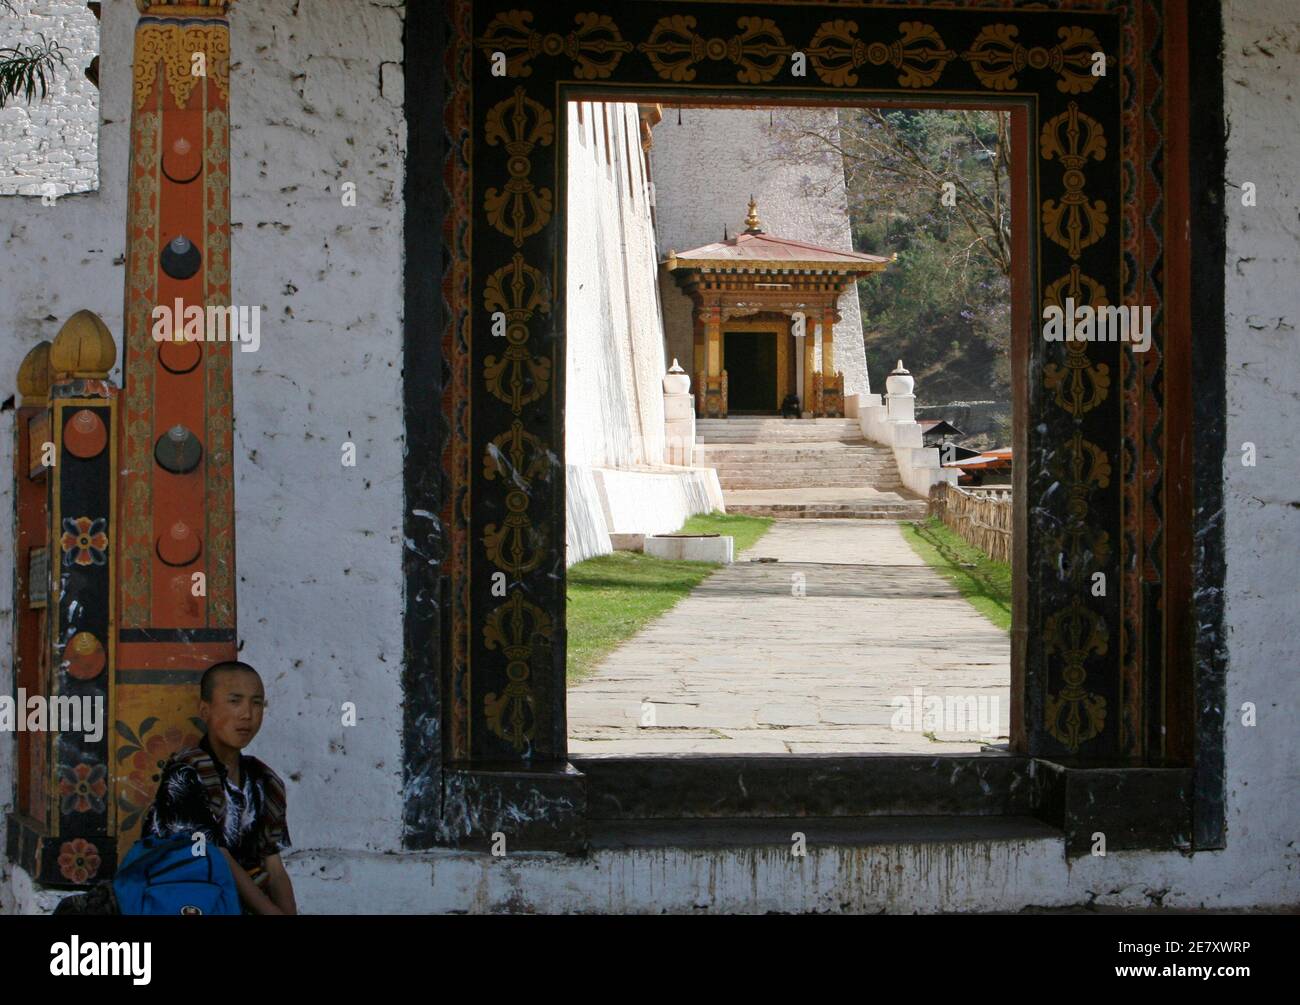 Ein Mann sitzt am Eingang von Dzong, einer Festung in Punakha 19. April 2007. Erst in den 1960er Jahren hatte Bhutan keine Straßen und praktisch keine Schulen oder Krankenhäuser. Heute sind Bildung und Gesundheitsversorgung kostenlos, und die Lebenserwartung ist auf 66 Jahre gestiegen, von weniger als 40, eine Tatsache, die die meisten Menschen der königlichen Herrschaft zuschreiben. Bild aufgenommen am 19. April 2007. REUTERS/Desmond Boylan (BHUTAN) Stockfoto